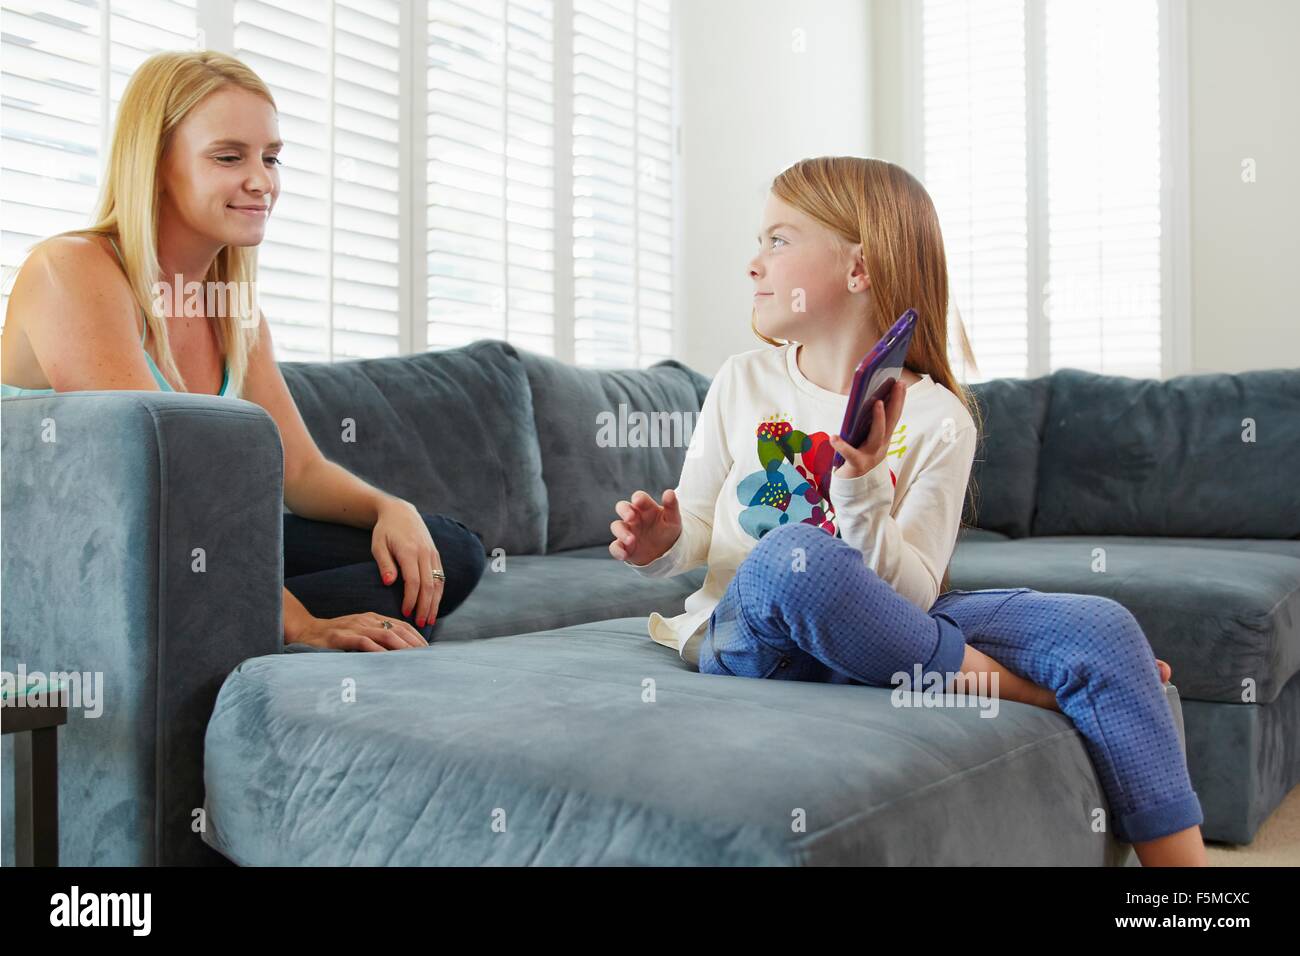 Mère et fille using digital tablet on sofa in living room Banque D'Images